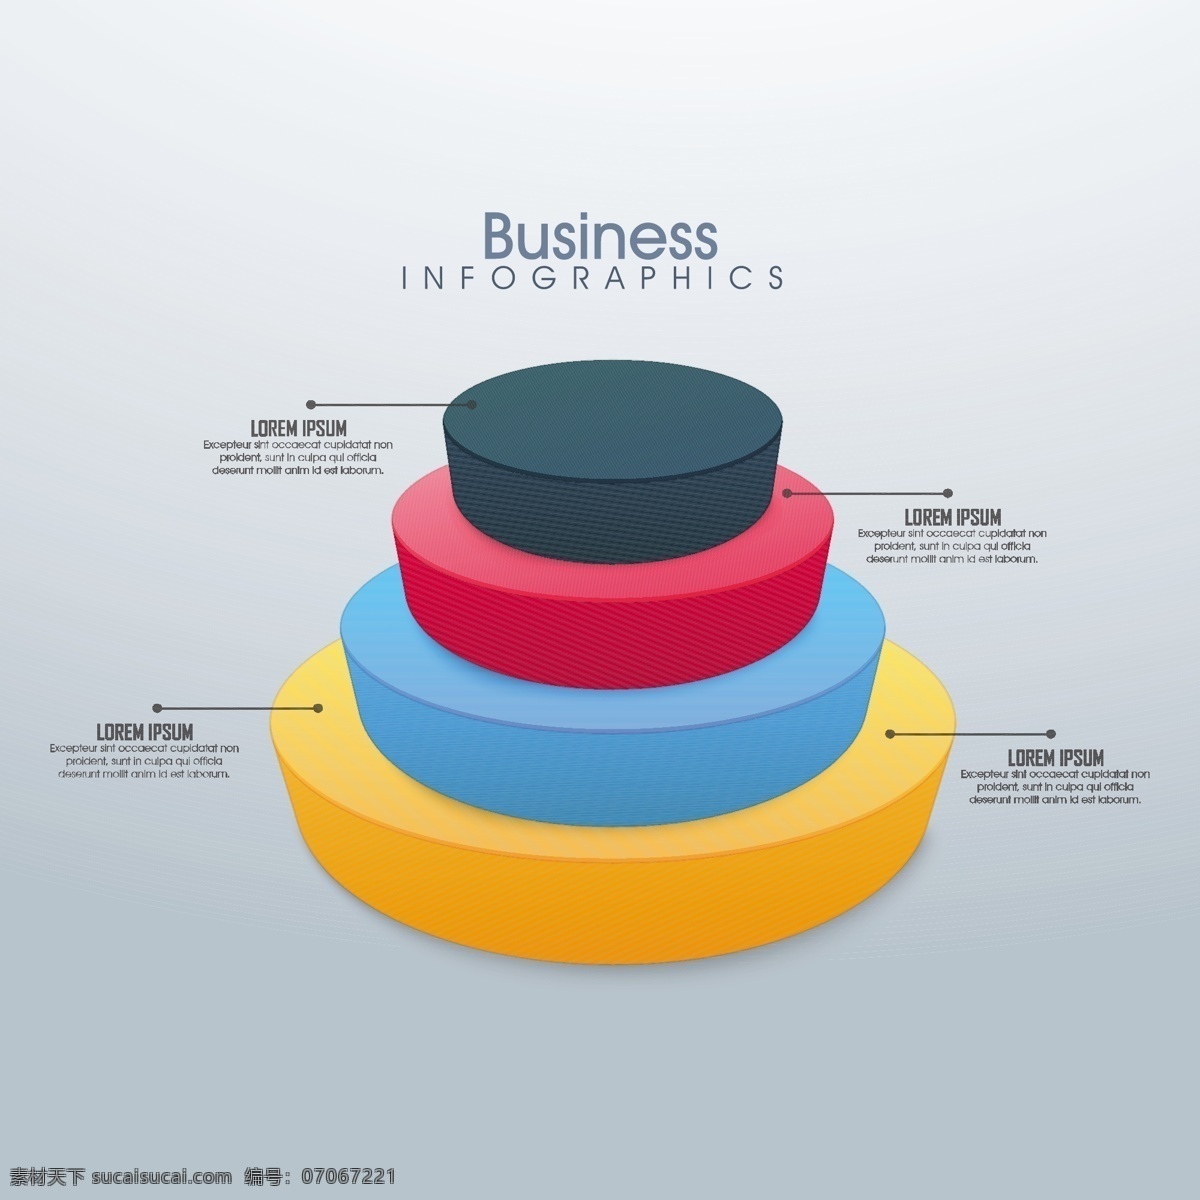 不同 颜色 圆 图 商业 图表 业务模板 图形 色彩营销 丰富多彩 工艺图表模板 数据 信息 业务信息图表 增长 信息图形